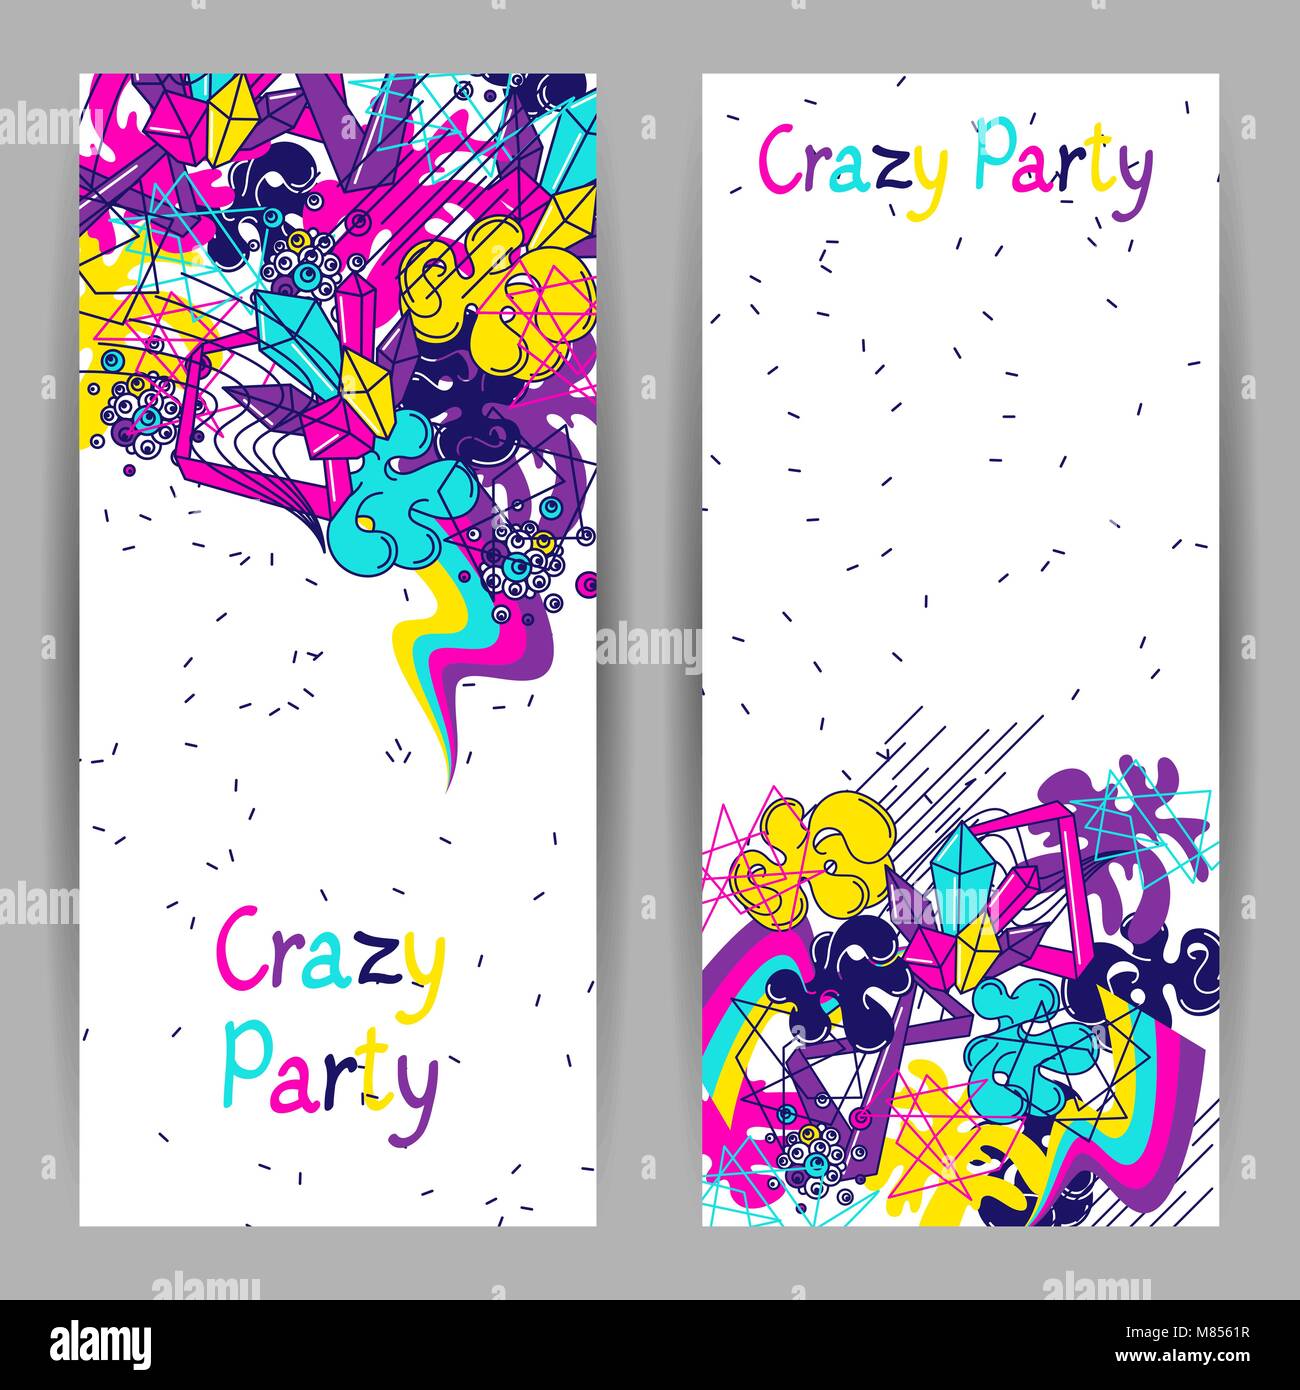 Des bannières colorées à la mode crazy party. Résumé des éléments couleur moderne en style graffiti Illustration de Vecteur